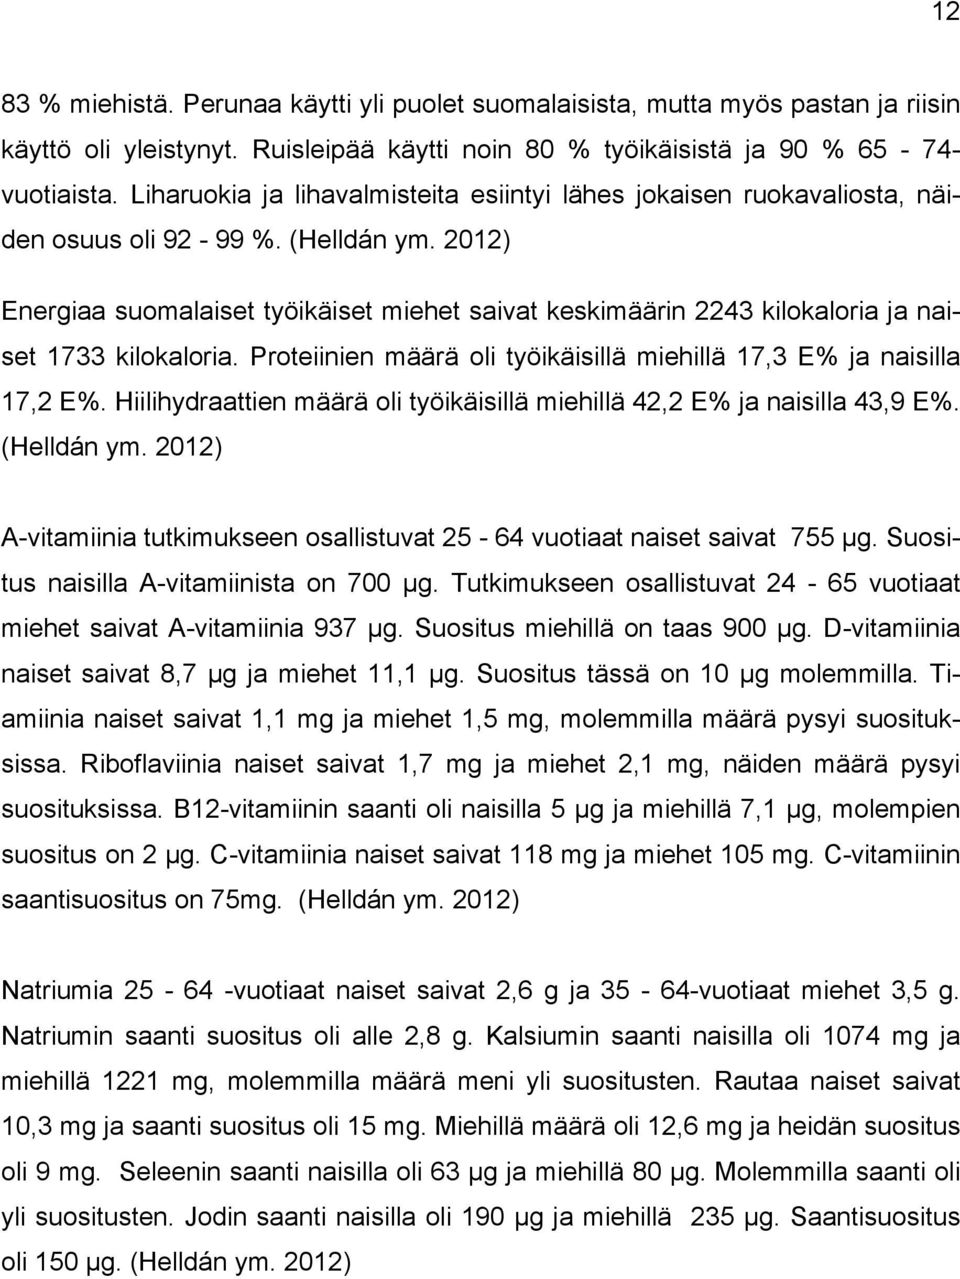 2012) Energiaa suomalaiset työikäiset miehet saivat keskimäärin 2243 kilokaloria ja naiset 1733 kilokaloria. Proteiinien määrä oli työikäisillä miehillä 17,3 E% ja naisilla 17,2 E%.